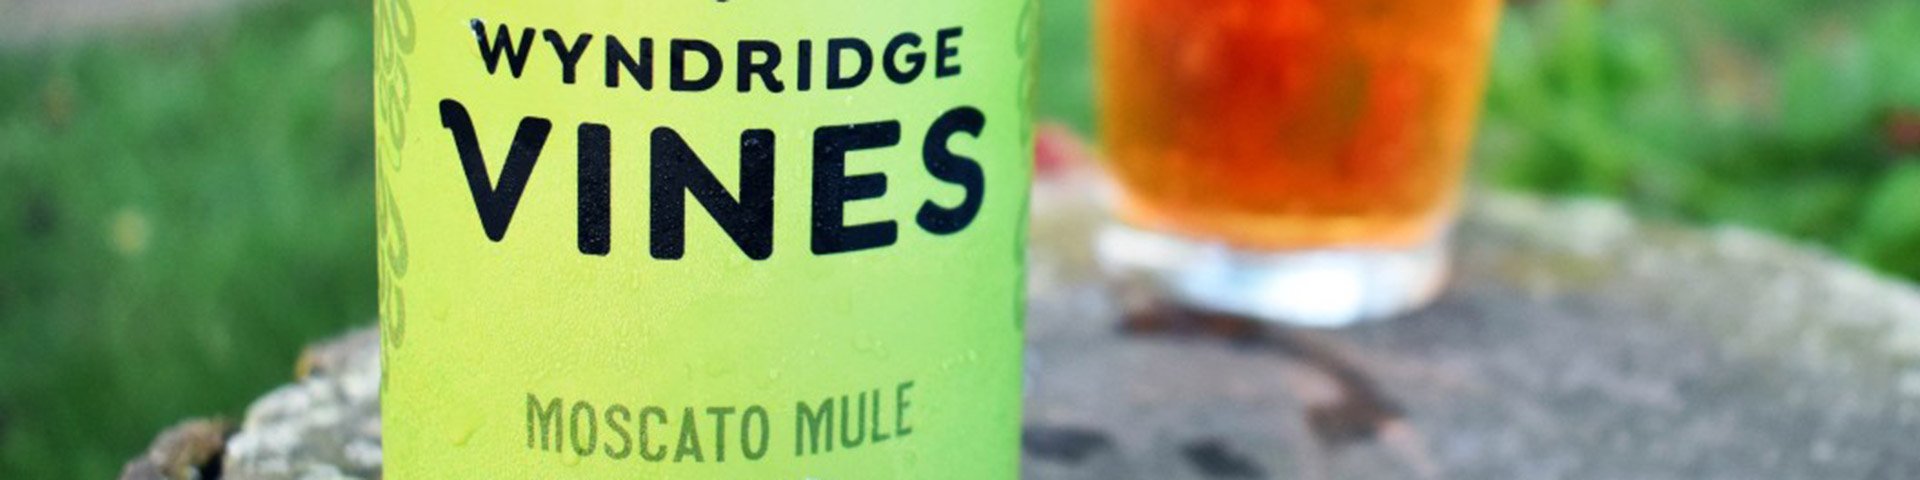 Wyndridge Vines - Moscato Mule